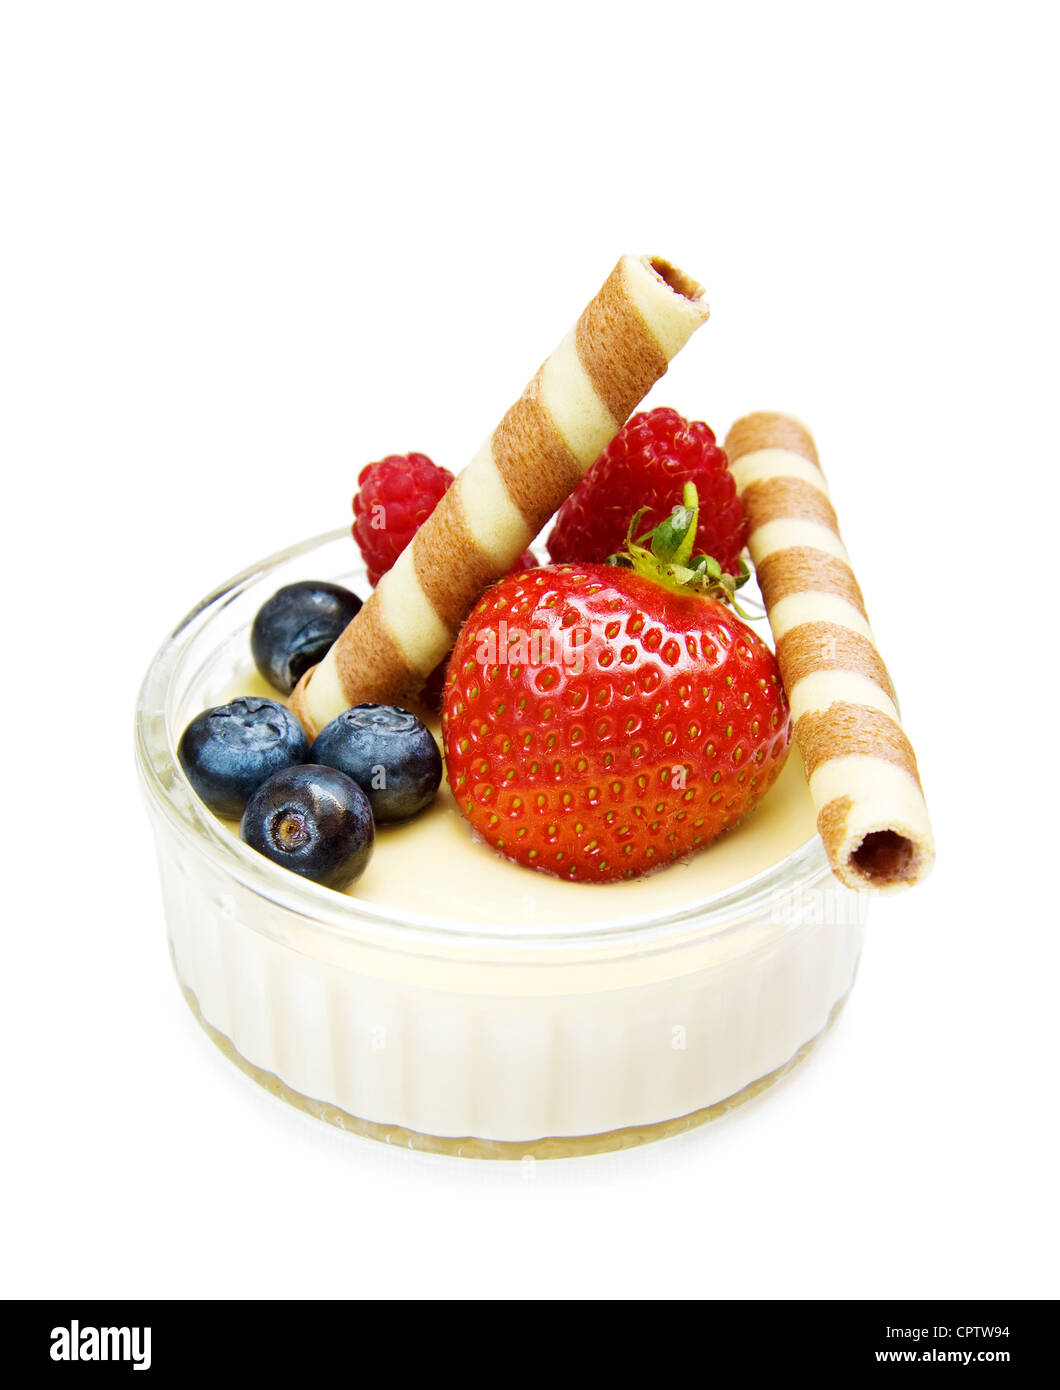 Postre saludable - fresa, frambuesa con galletas de chocolate y yogur. Aislado en blanco. Foto de stock